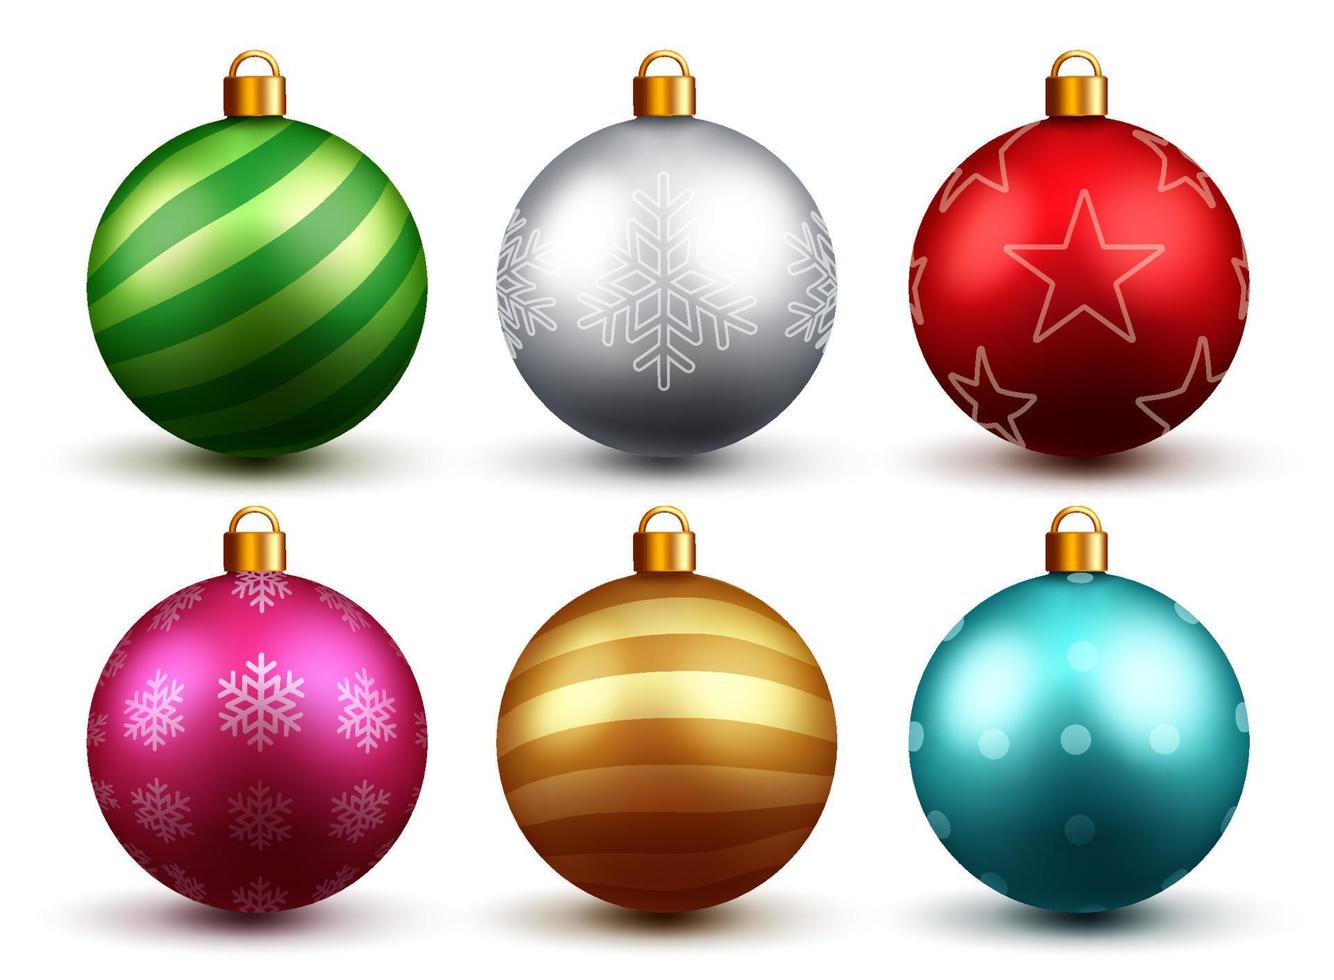 diseño de escenografía de vector de bolas de Navidad. Bola de Navidad realista 3d colorida con estampado de Navidad y patrones aislados en fondo blanco para decoración de adornos navideños. ilustración vectorial.